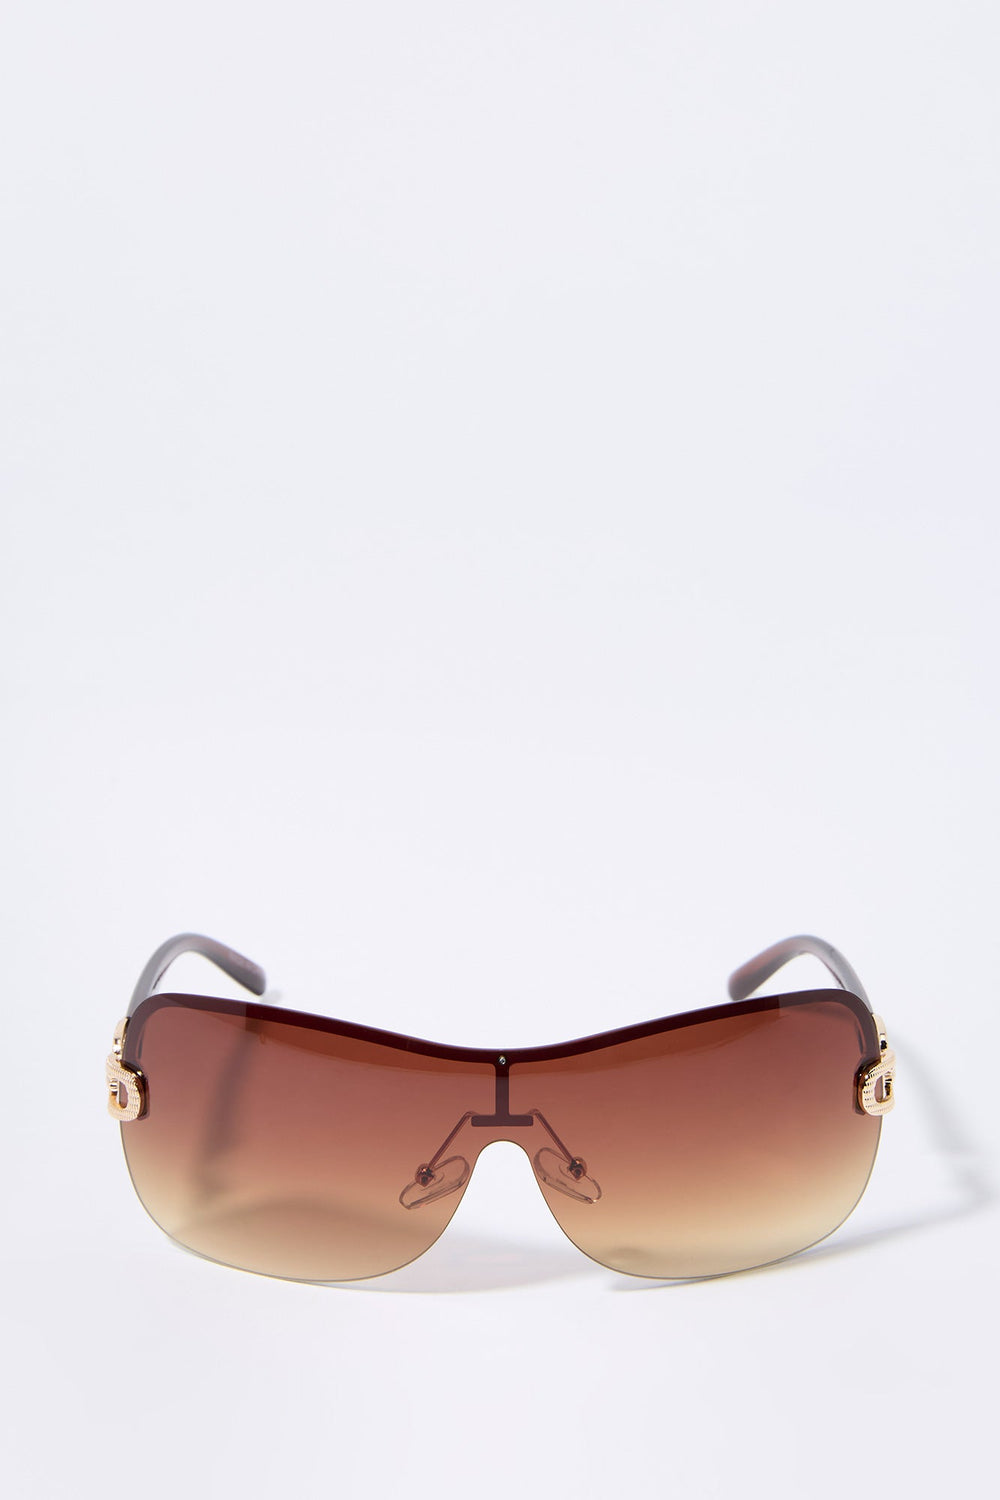 Colored Rimless Shield Sunglasses Colored Rimless Shield Sunglasses 1